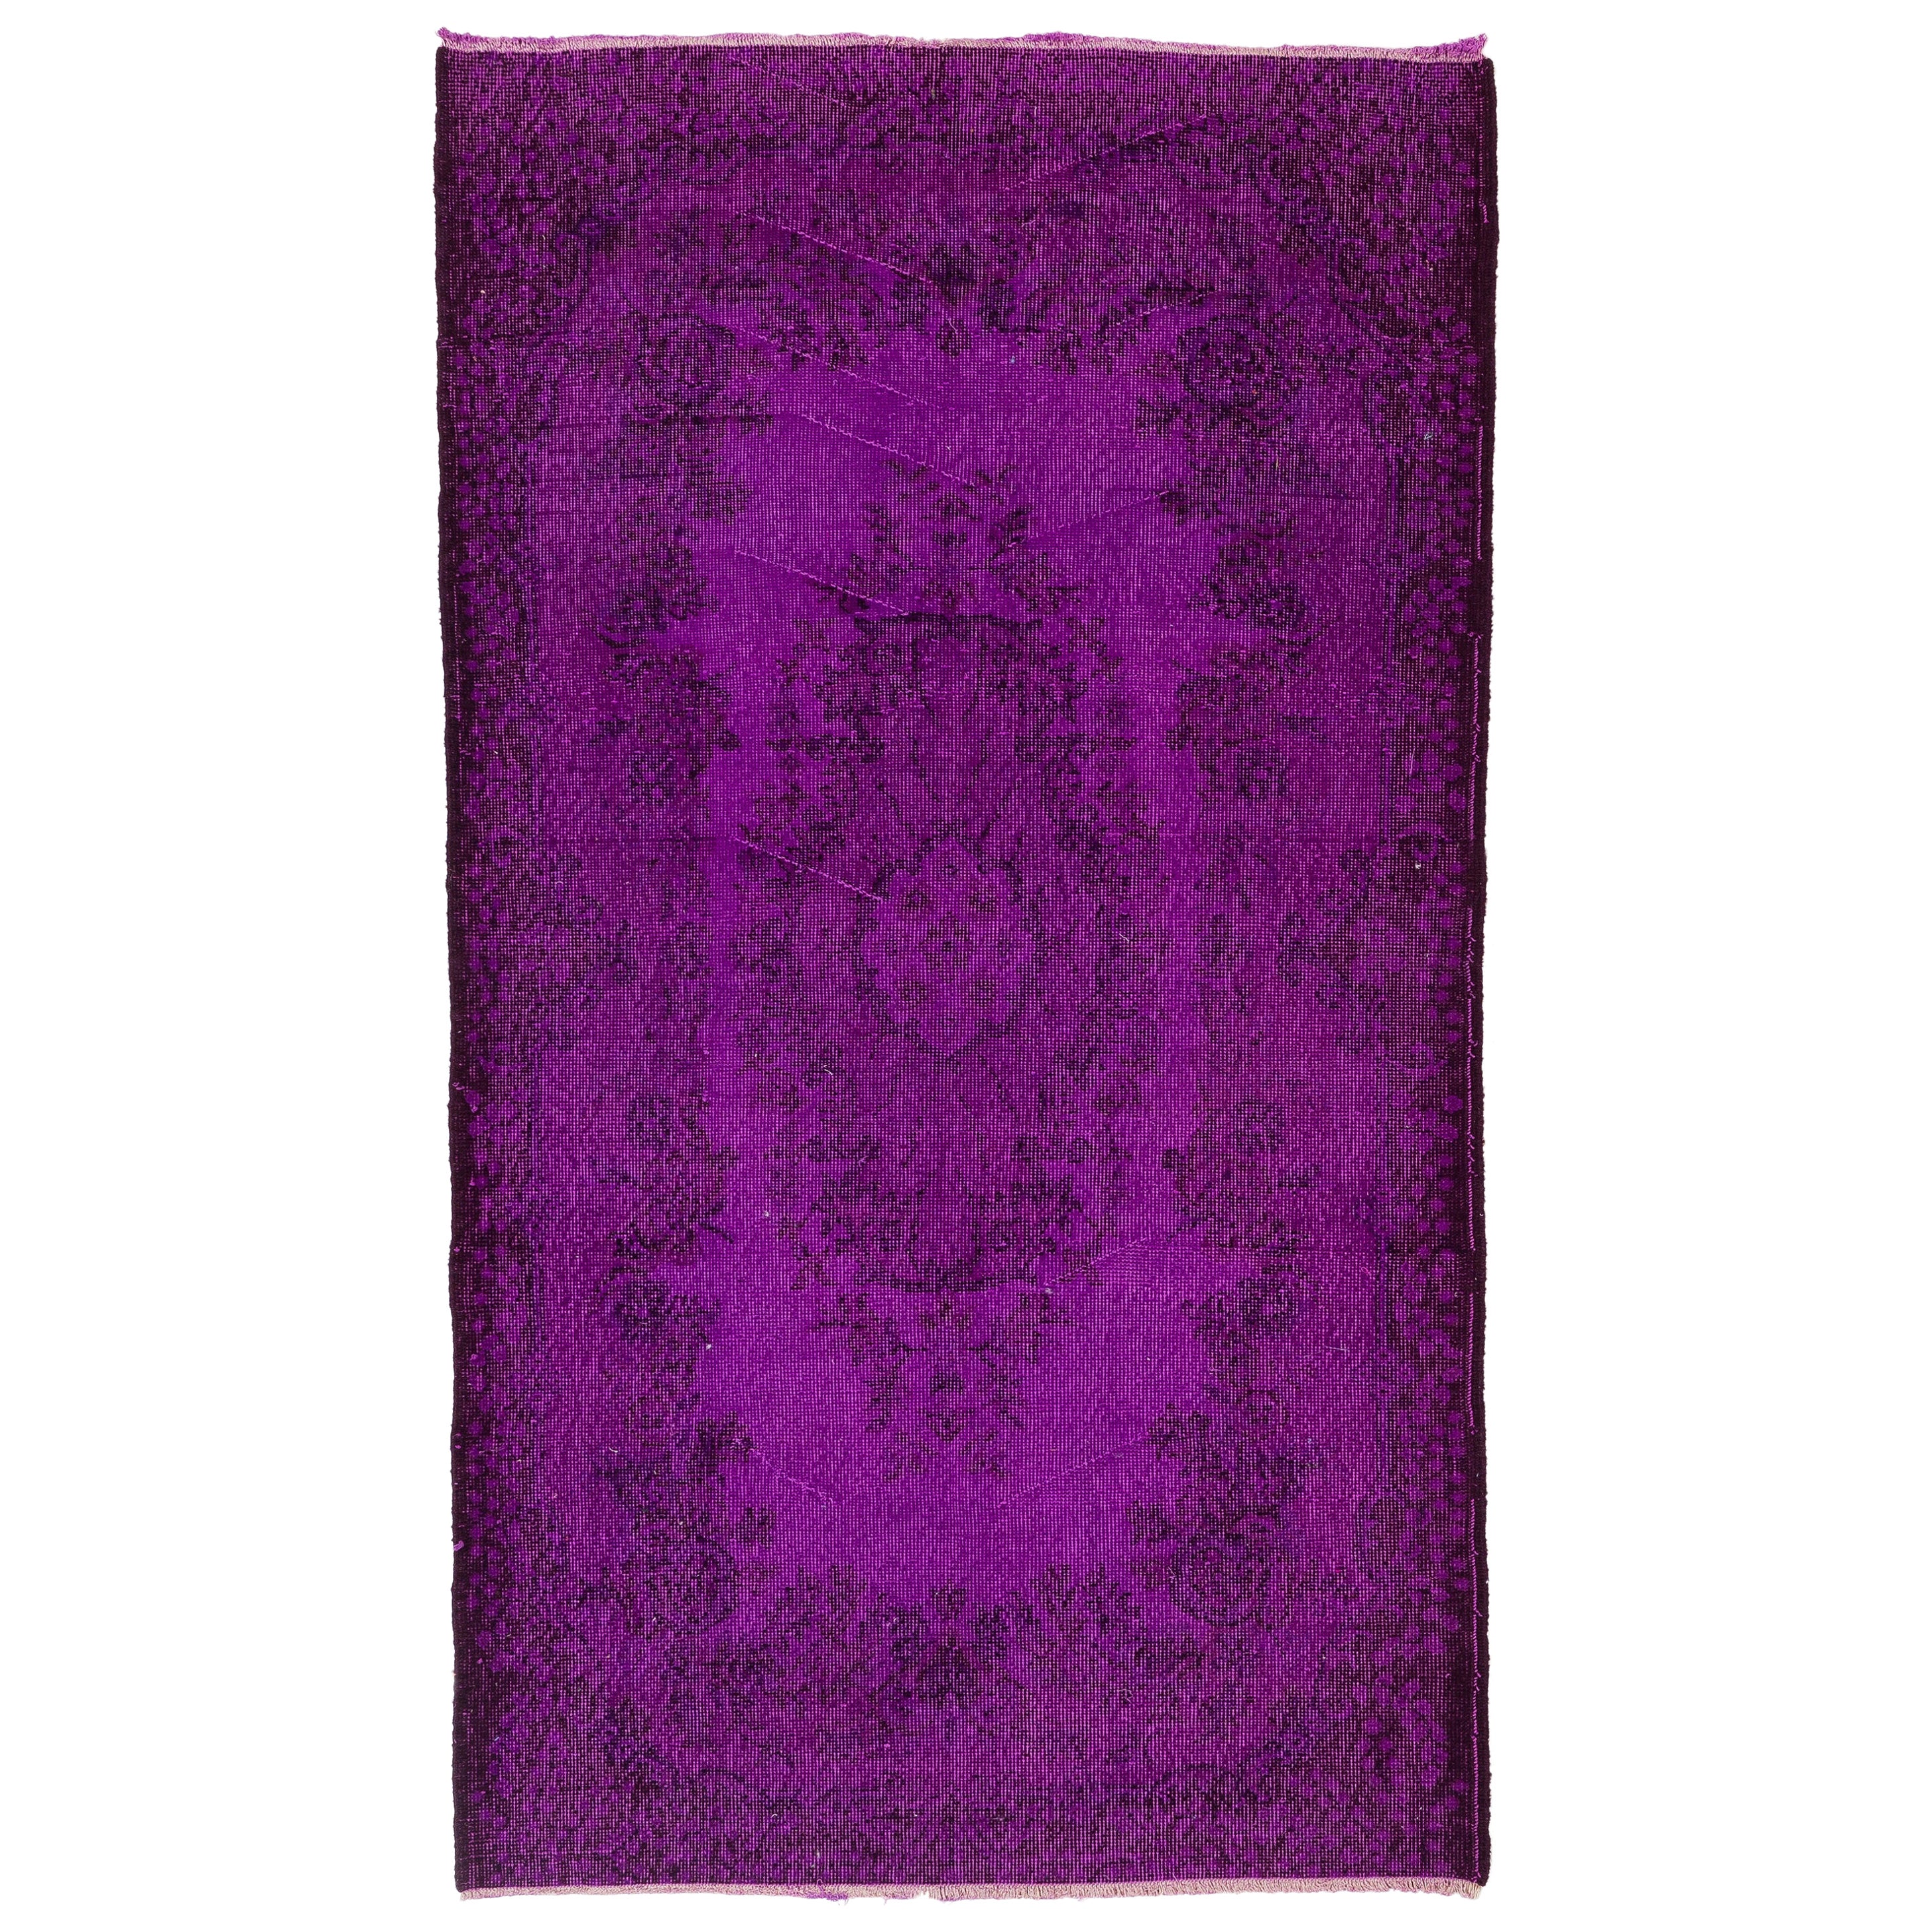 4x7 Ft Handgefertigter türkischer Vintage-Akzentteppich in lila Farbe für moderne Inneneinrichtung